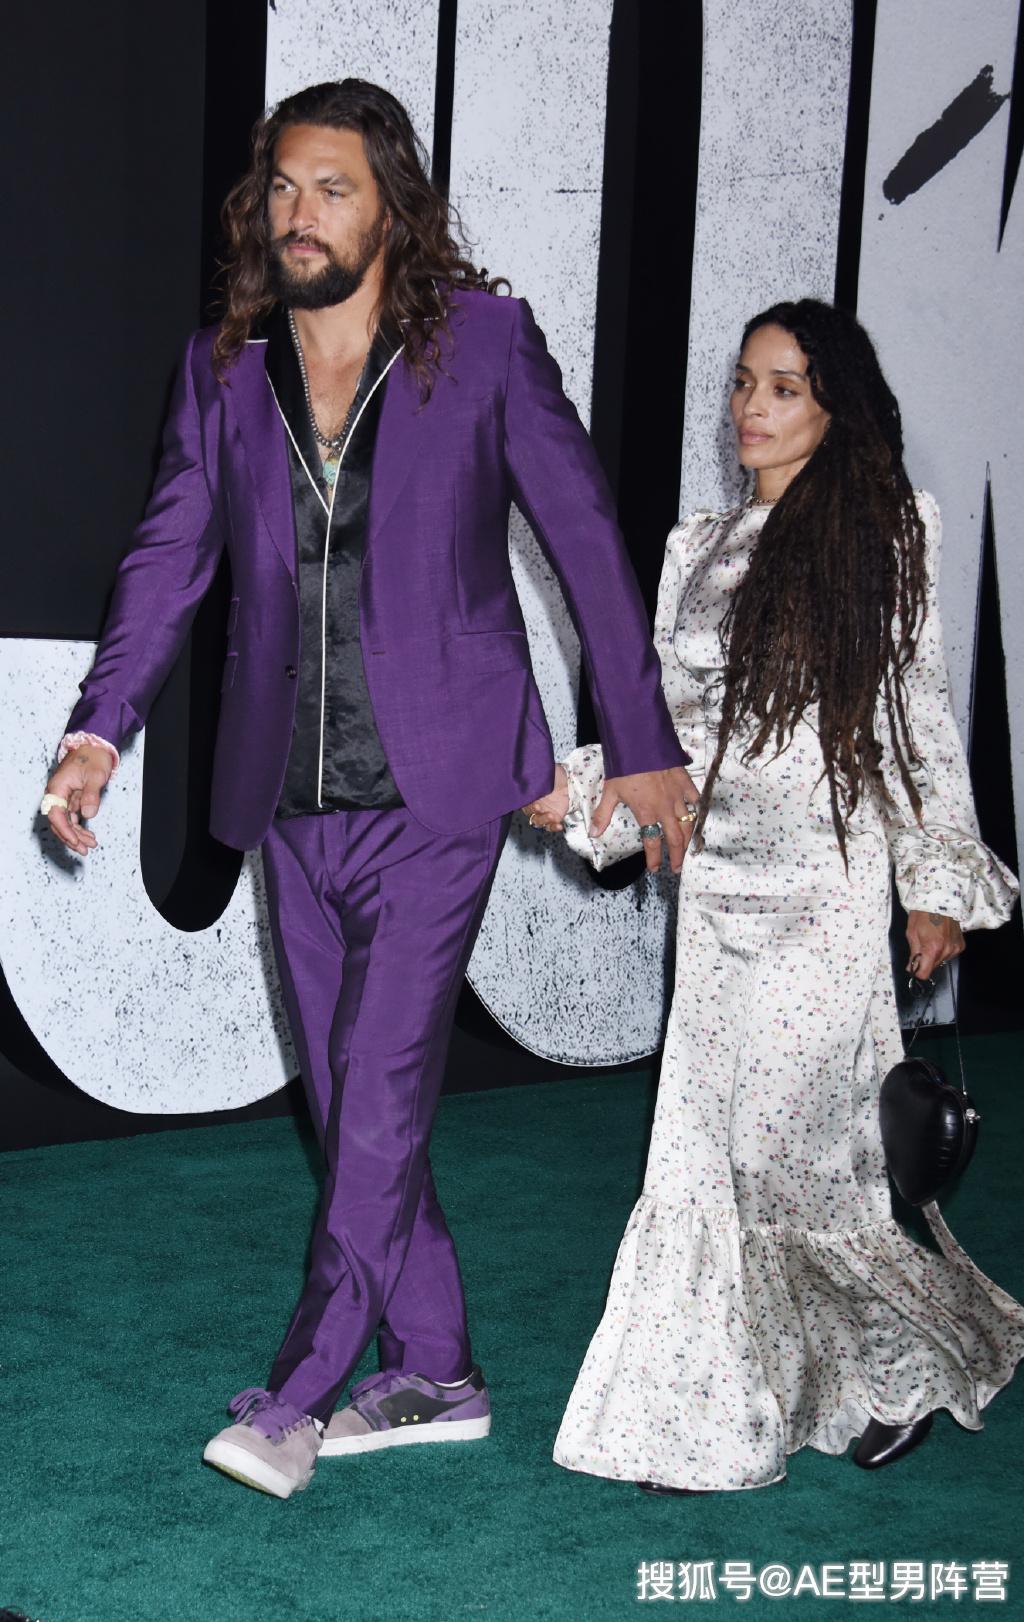 海王杰森·莫玛和妻子现身活动!193硬汉 骚紫色西装,太酷了